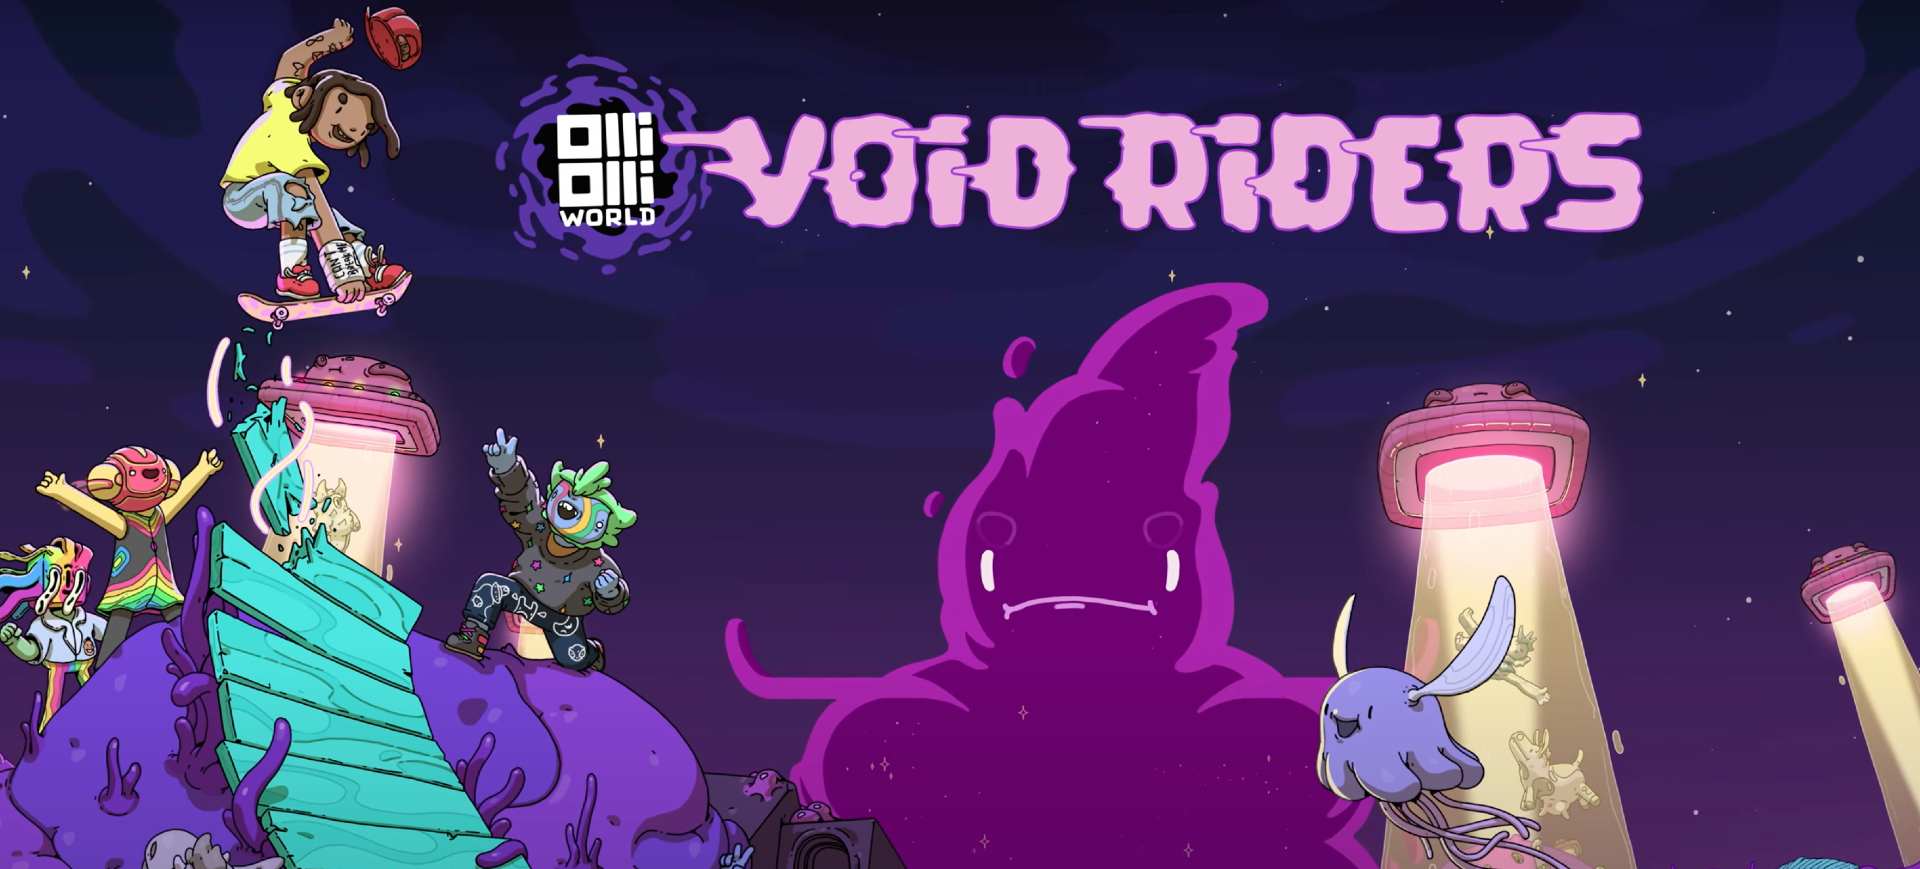 Captura de tela da nova expansão do game OlliOlli World, a Void Riders